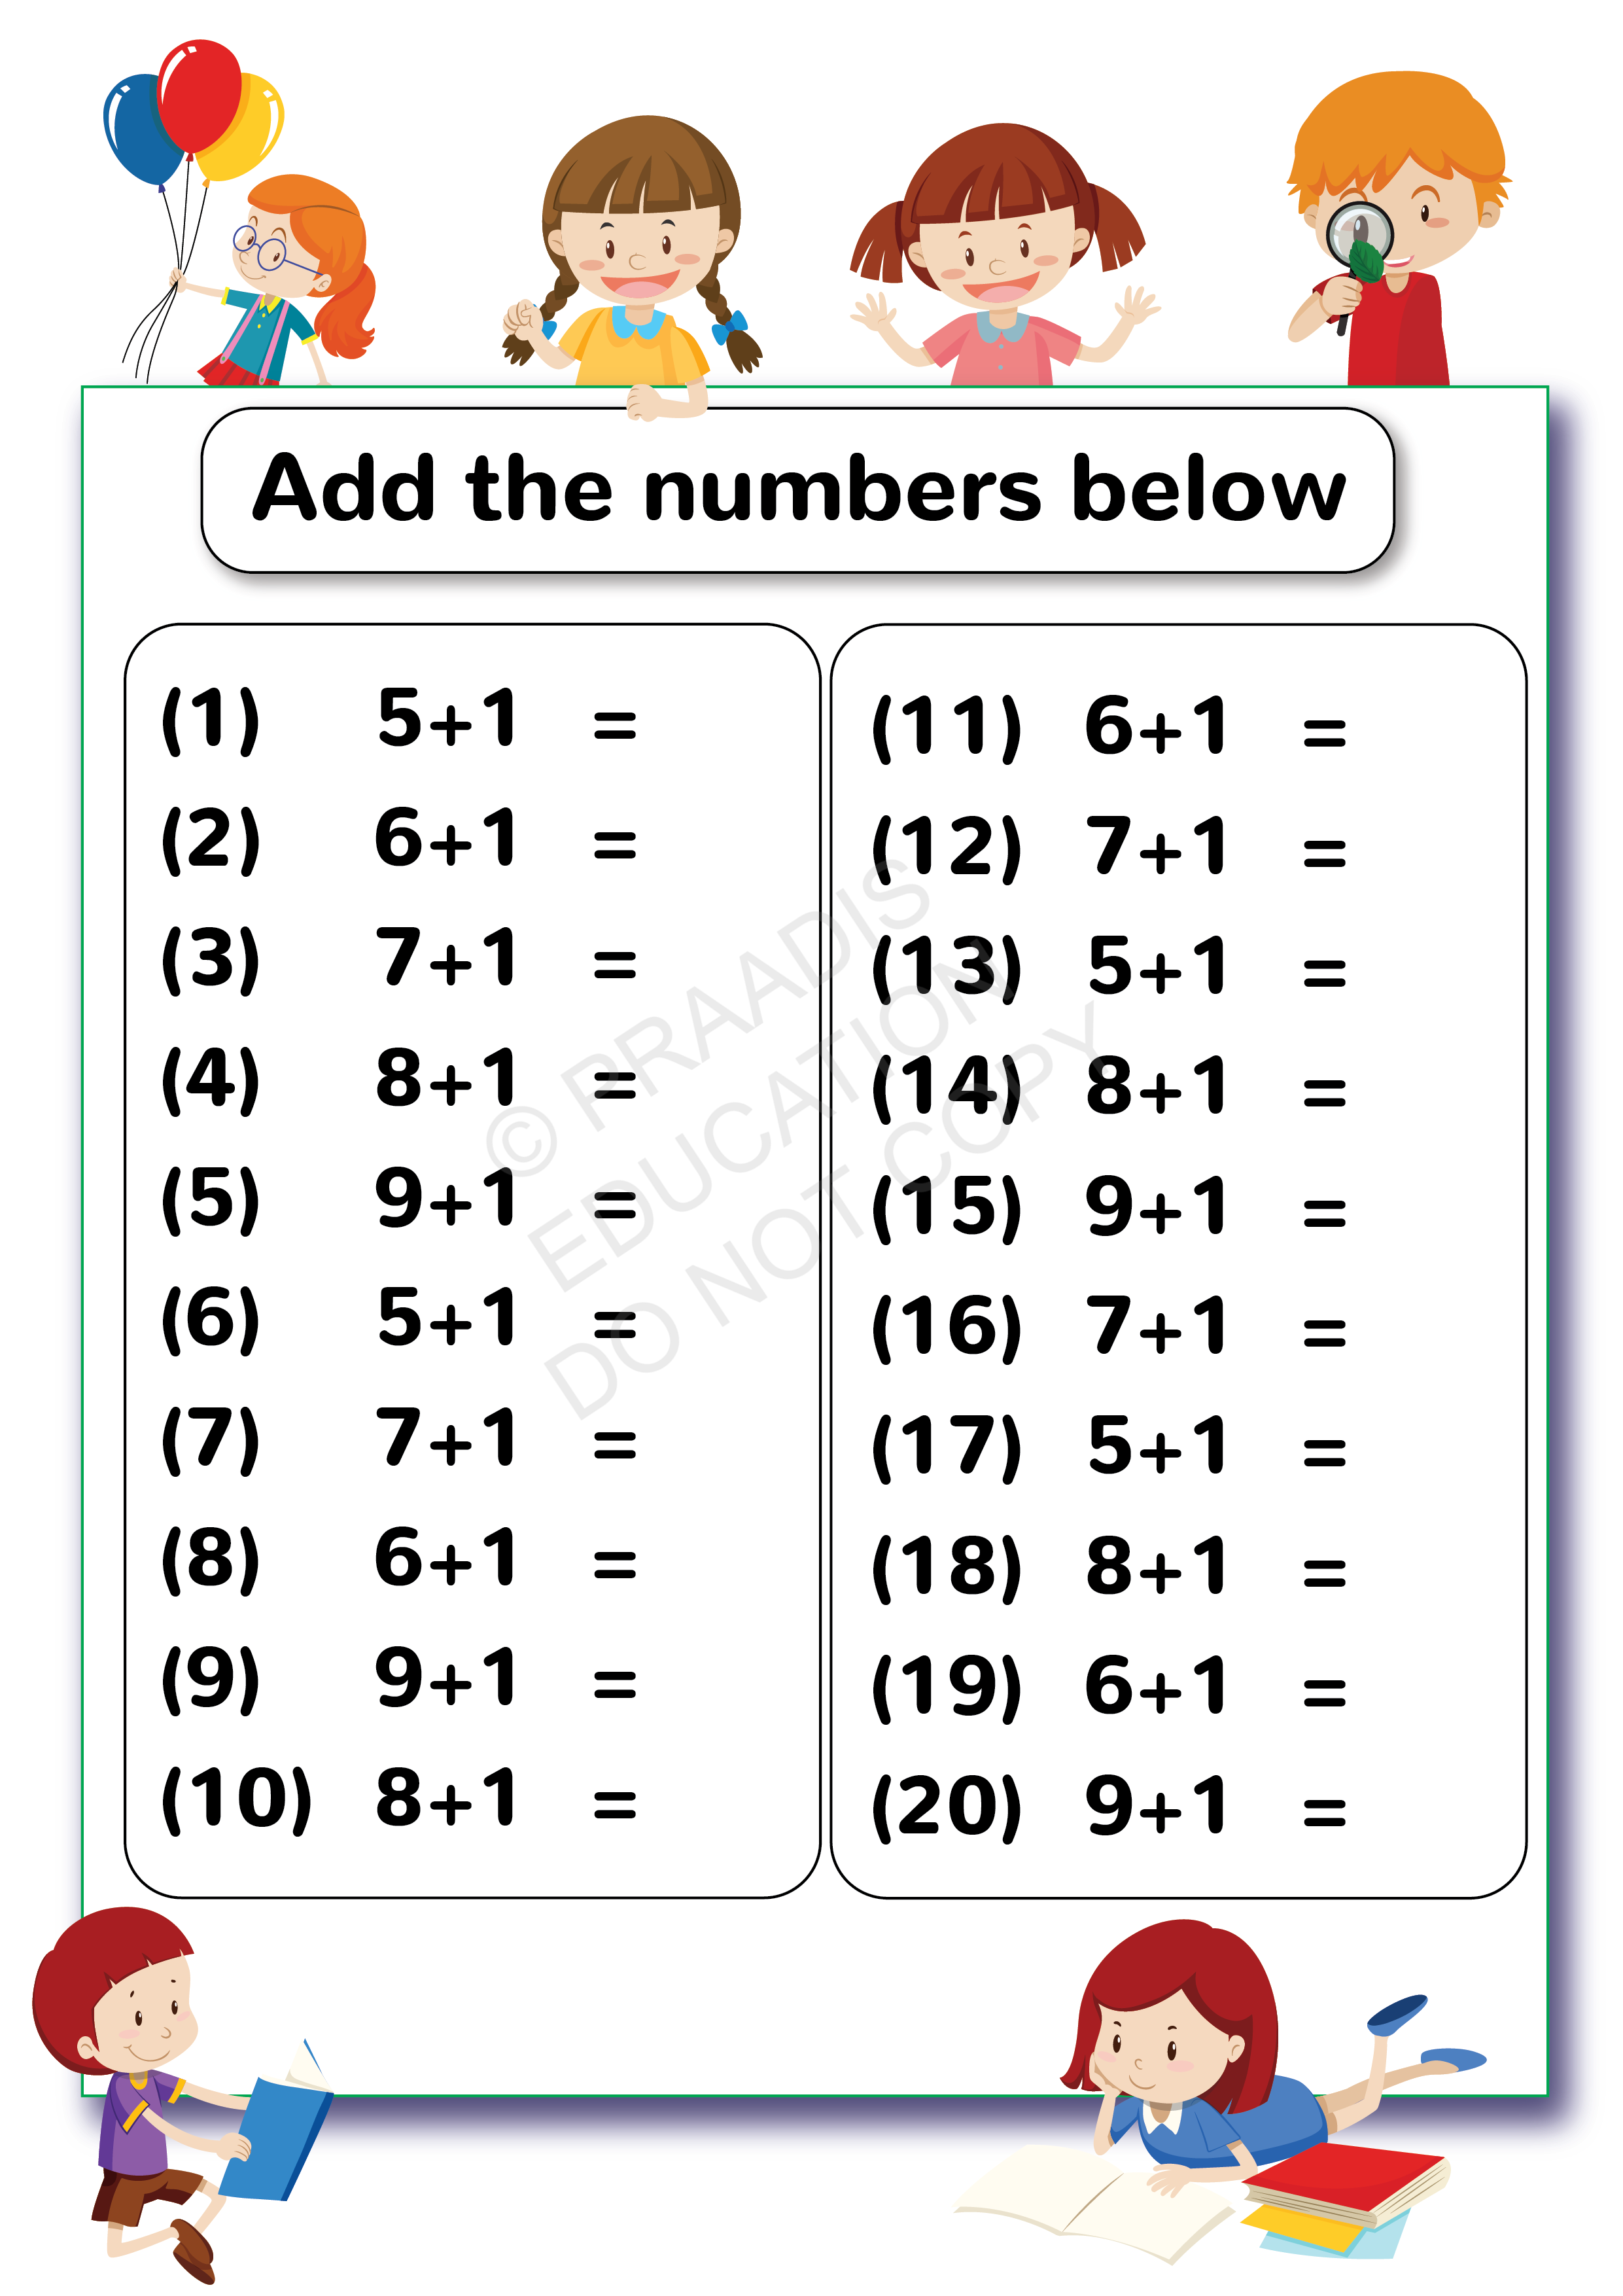 Patterns Ukg Math Worksheets Worksheets For Lkg To Grade 3 Maths 